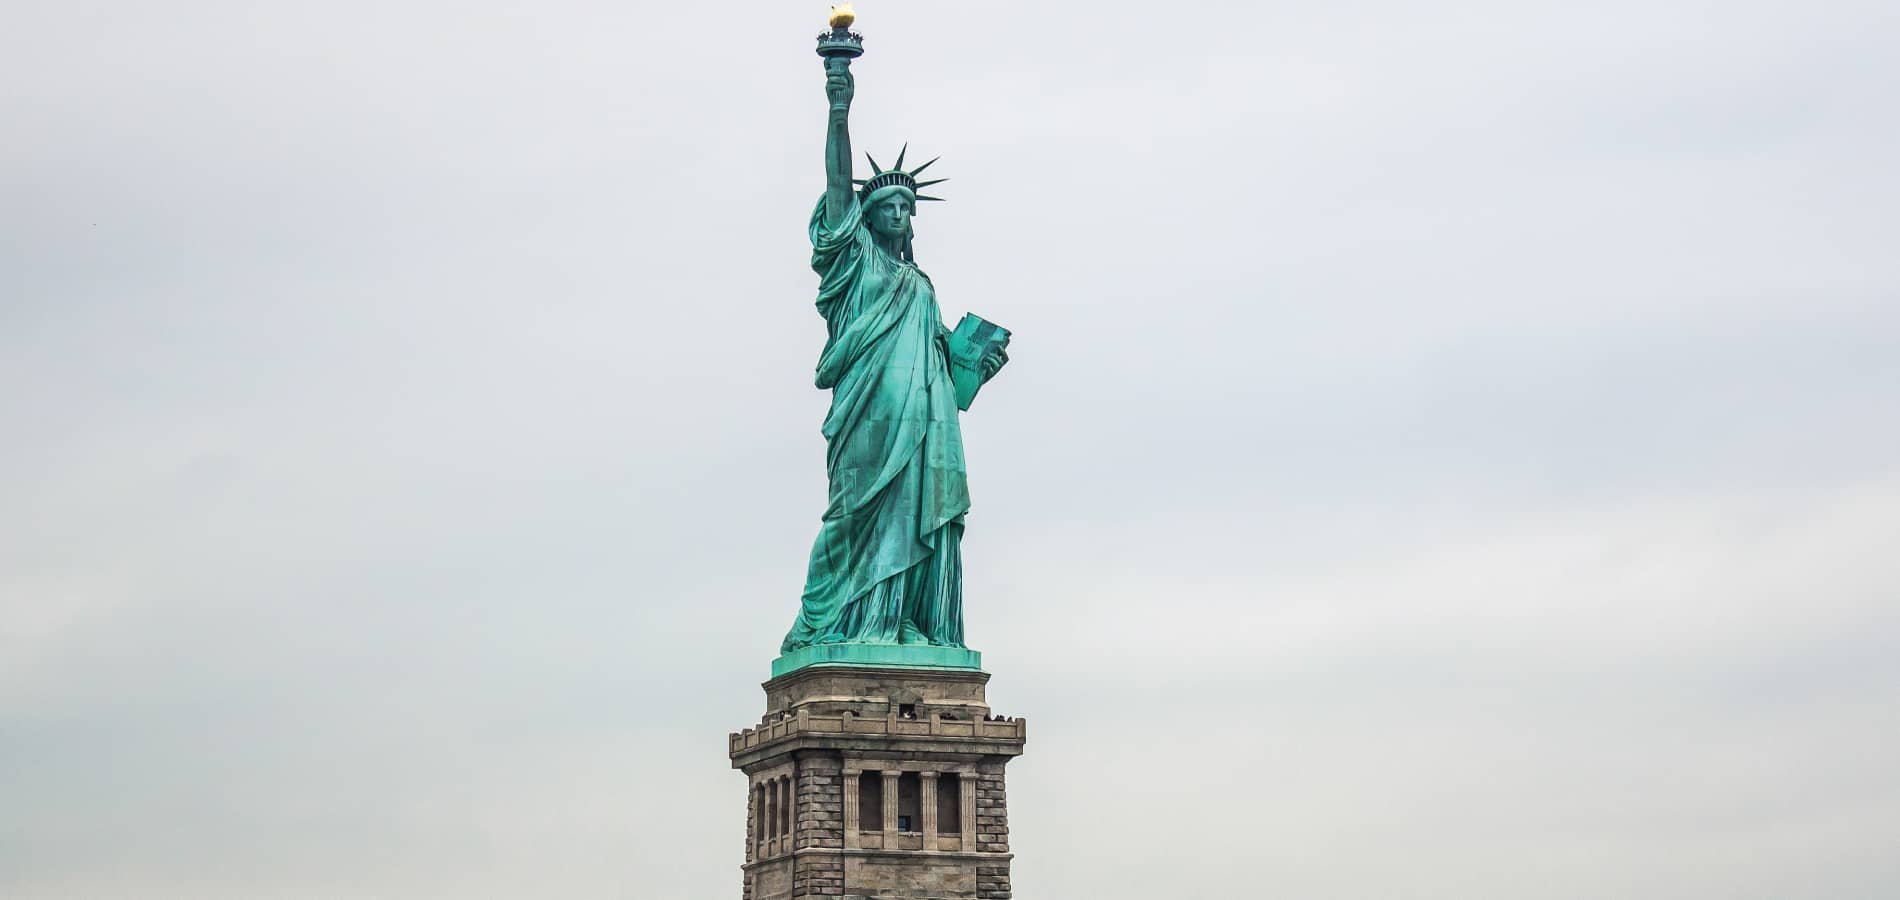 image of statute of liberty